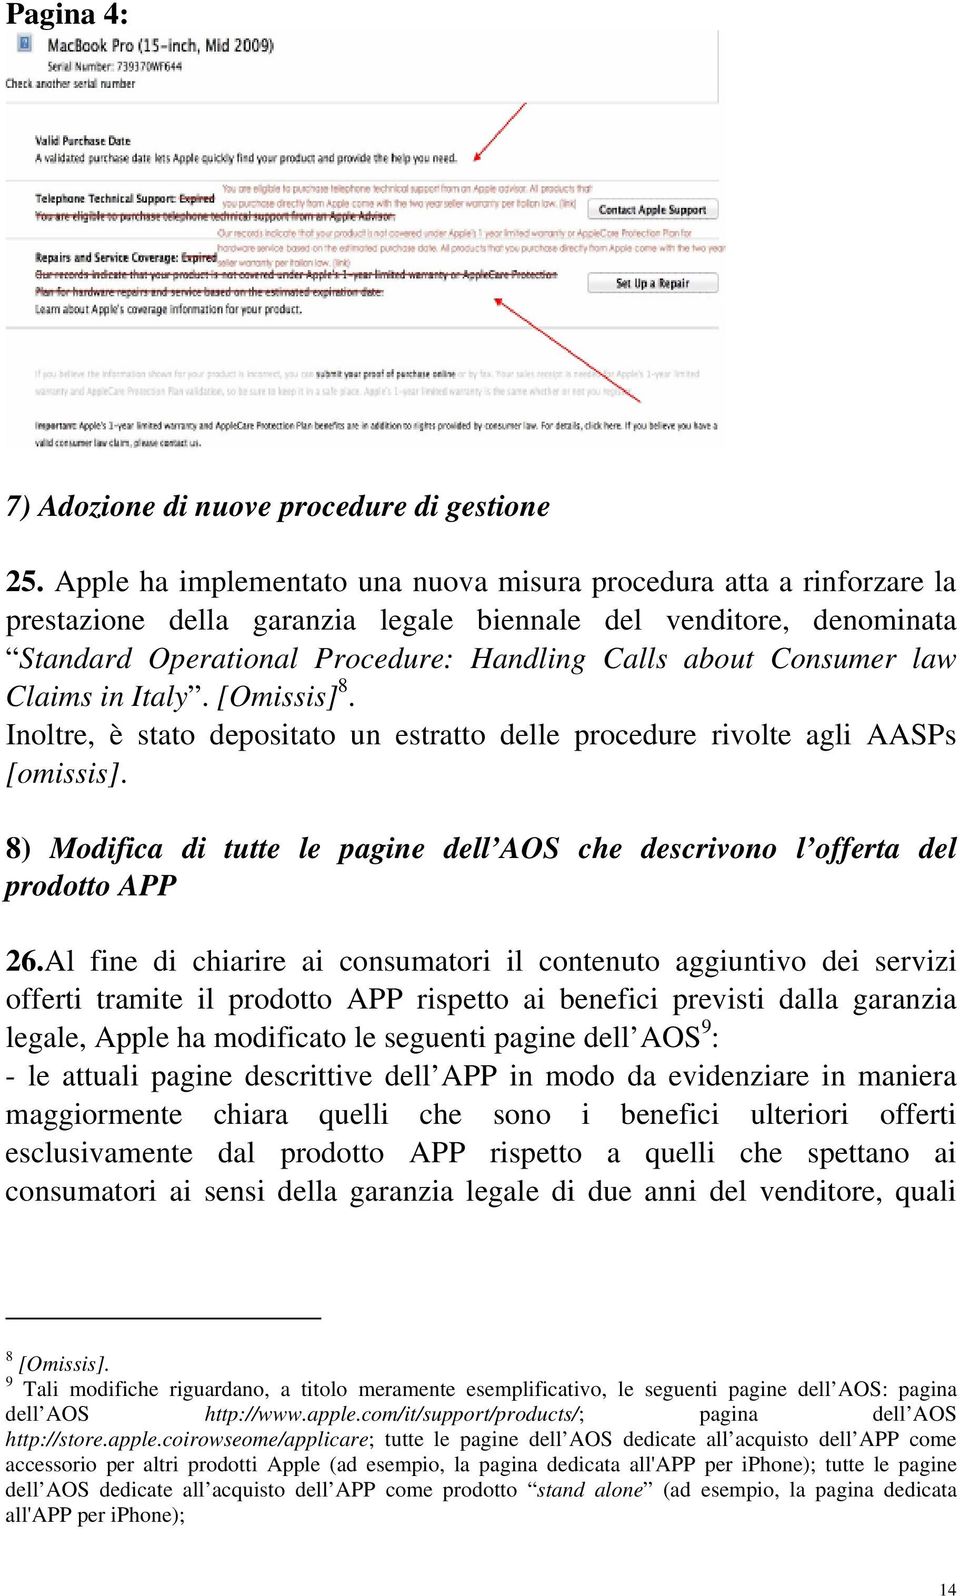 Consumer law Claims in Italy. [Omissis] 8. Inoltre, è stato depositato un estratto delle procedure rivolte agli AASPs [omissis].